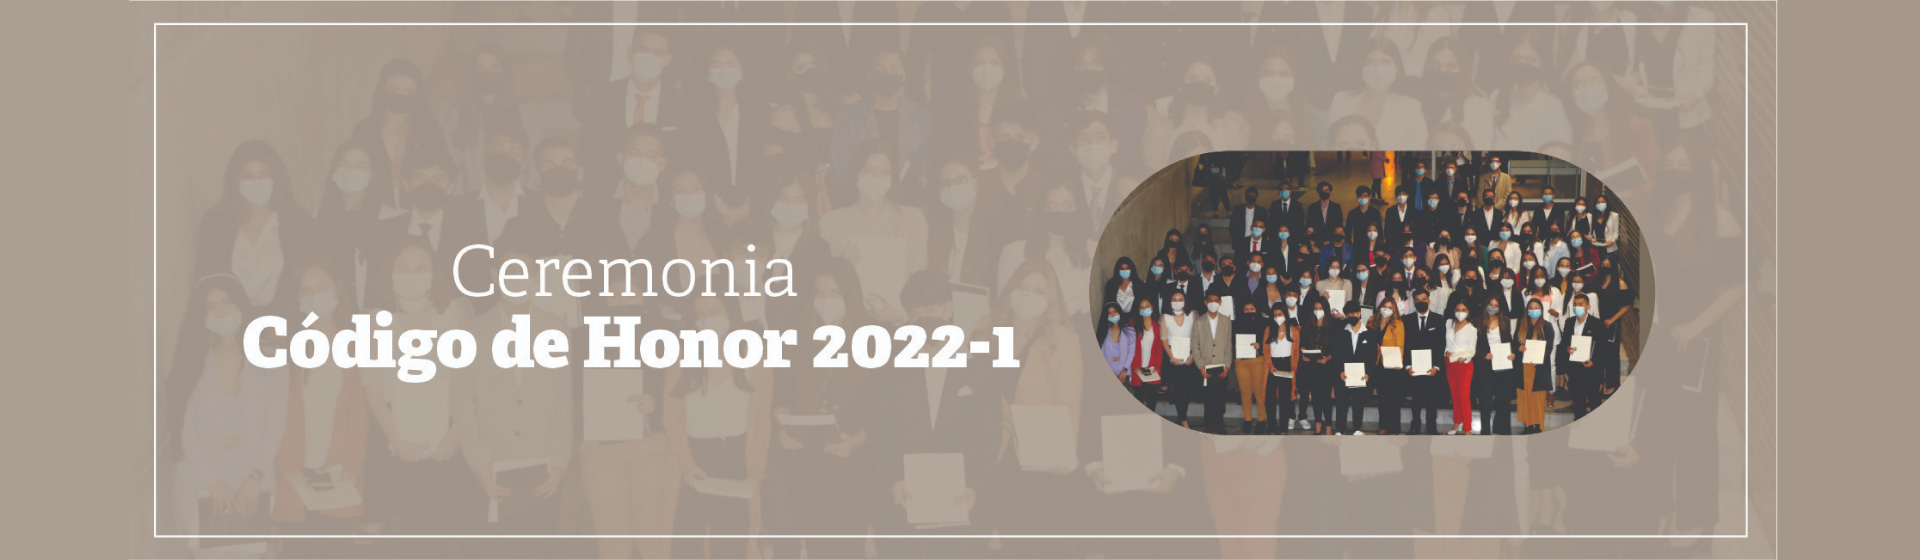 Ceremonia Código de Honor 2022-1